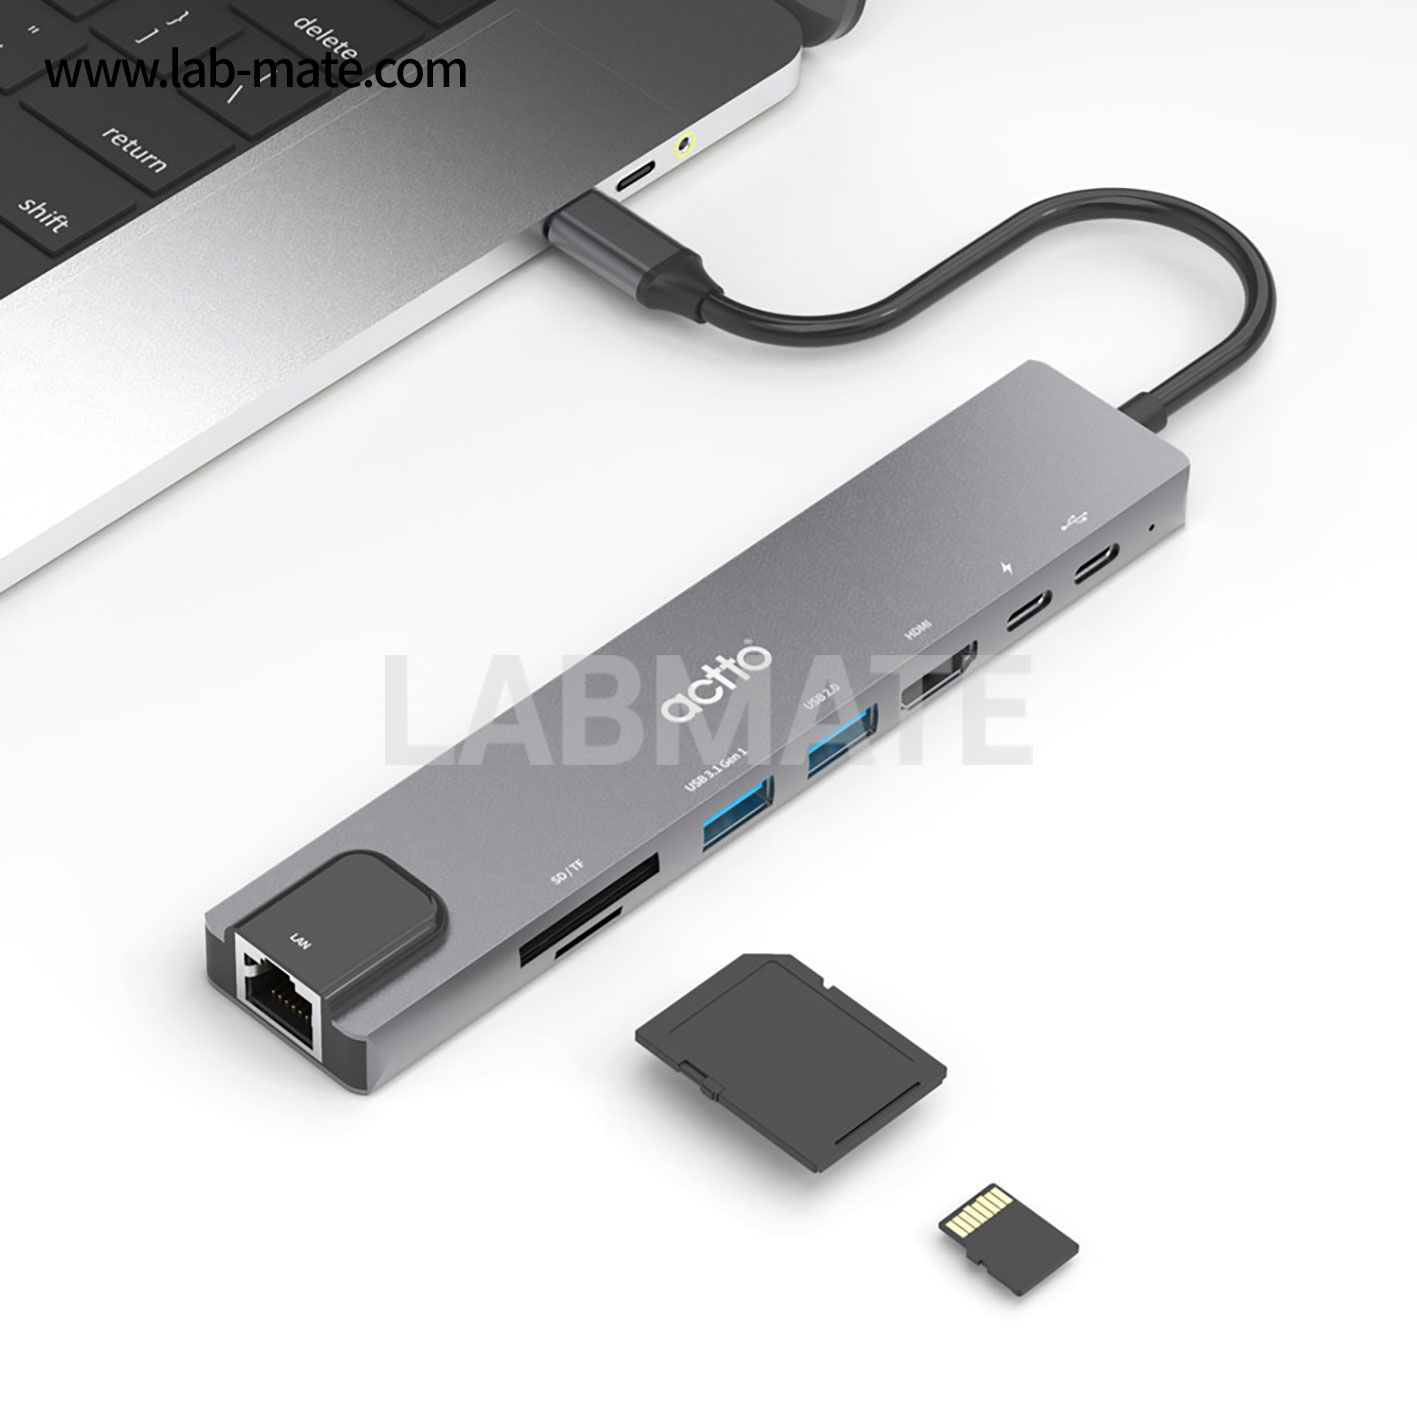 랩메이트,8 in 1 타입C 멀티 허브,PD + 타입C(data전송) + HDMI + USB3.0 + USB2.0 + TF + SD + 랜 / 미러링 / 4K [그레이],ACTTO